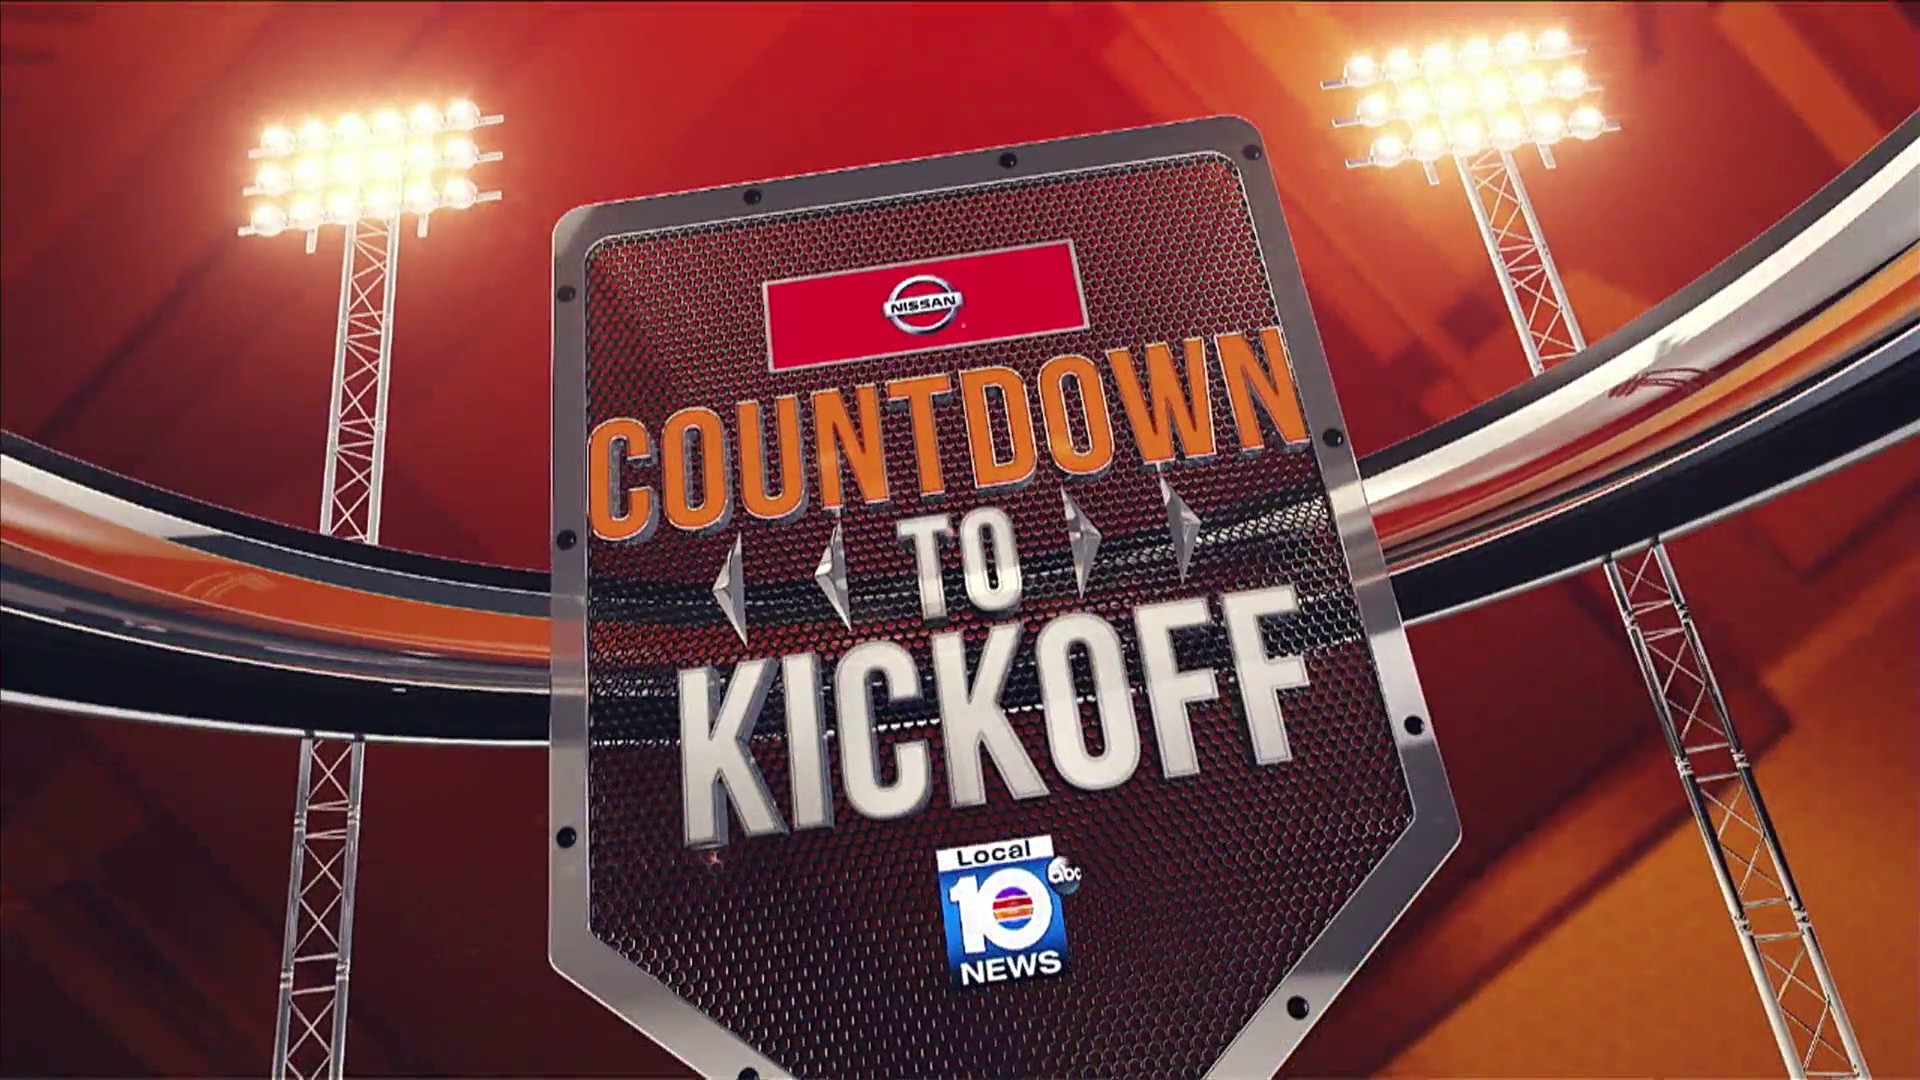 Wxxwxxxxxx - Watch Nissan's 'Countdown to Kickoff' pregame show